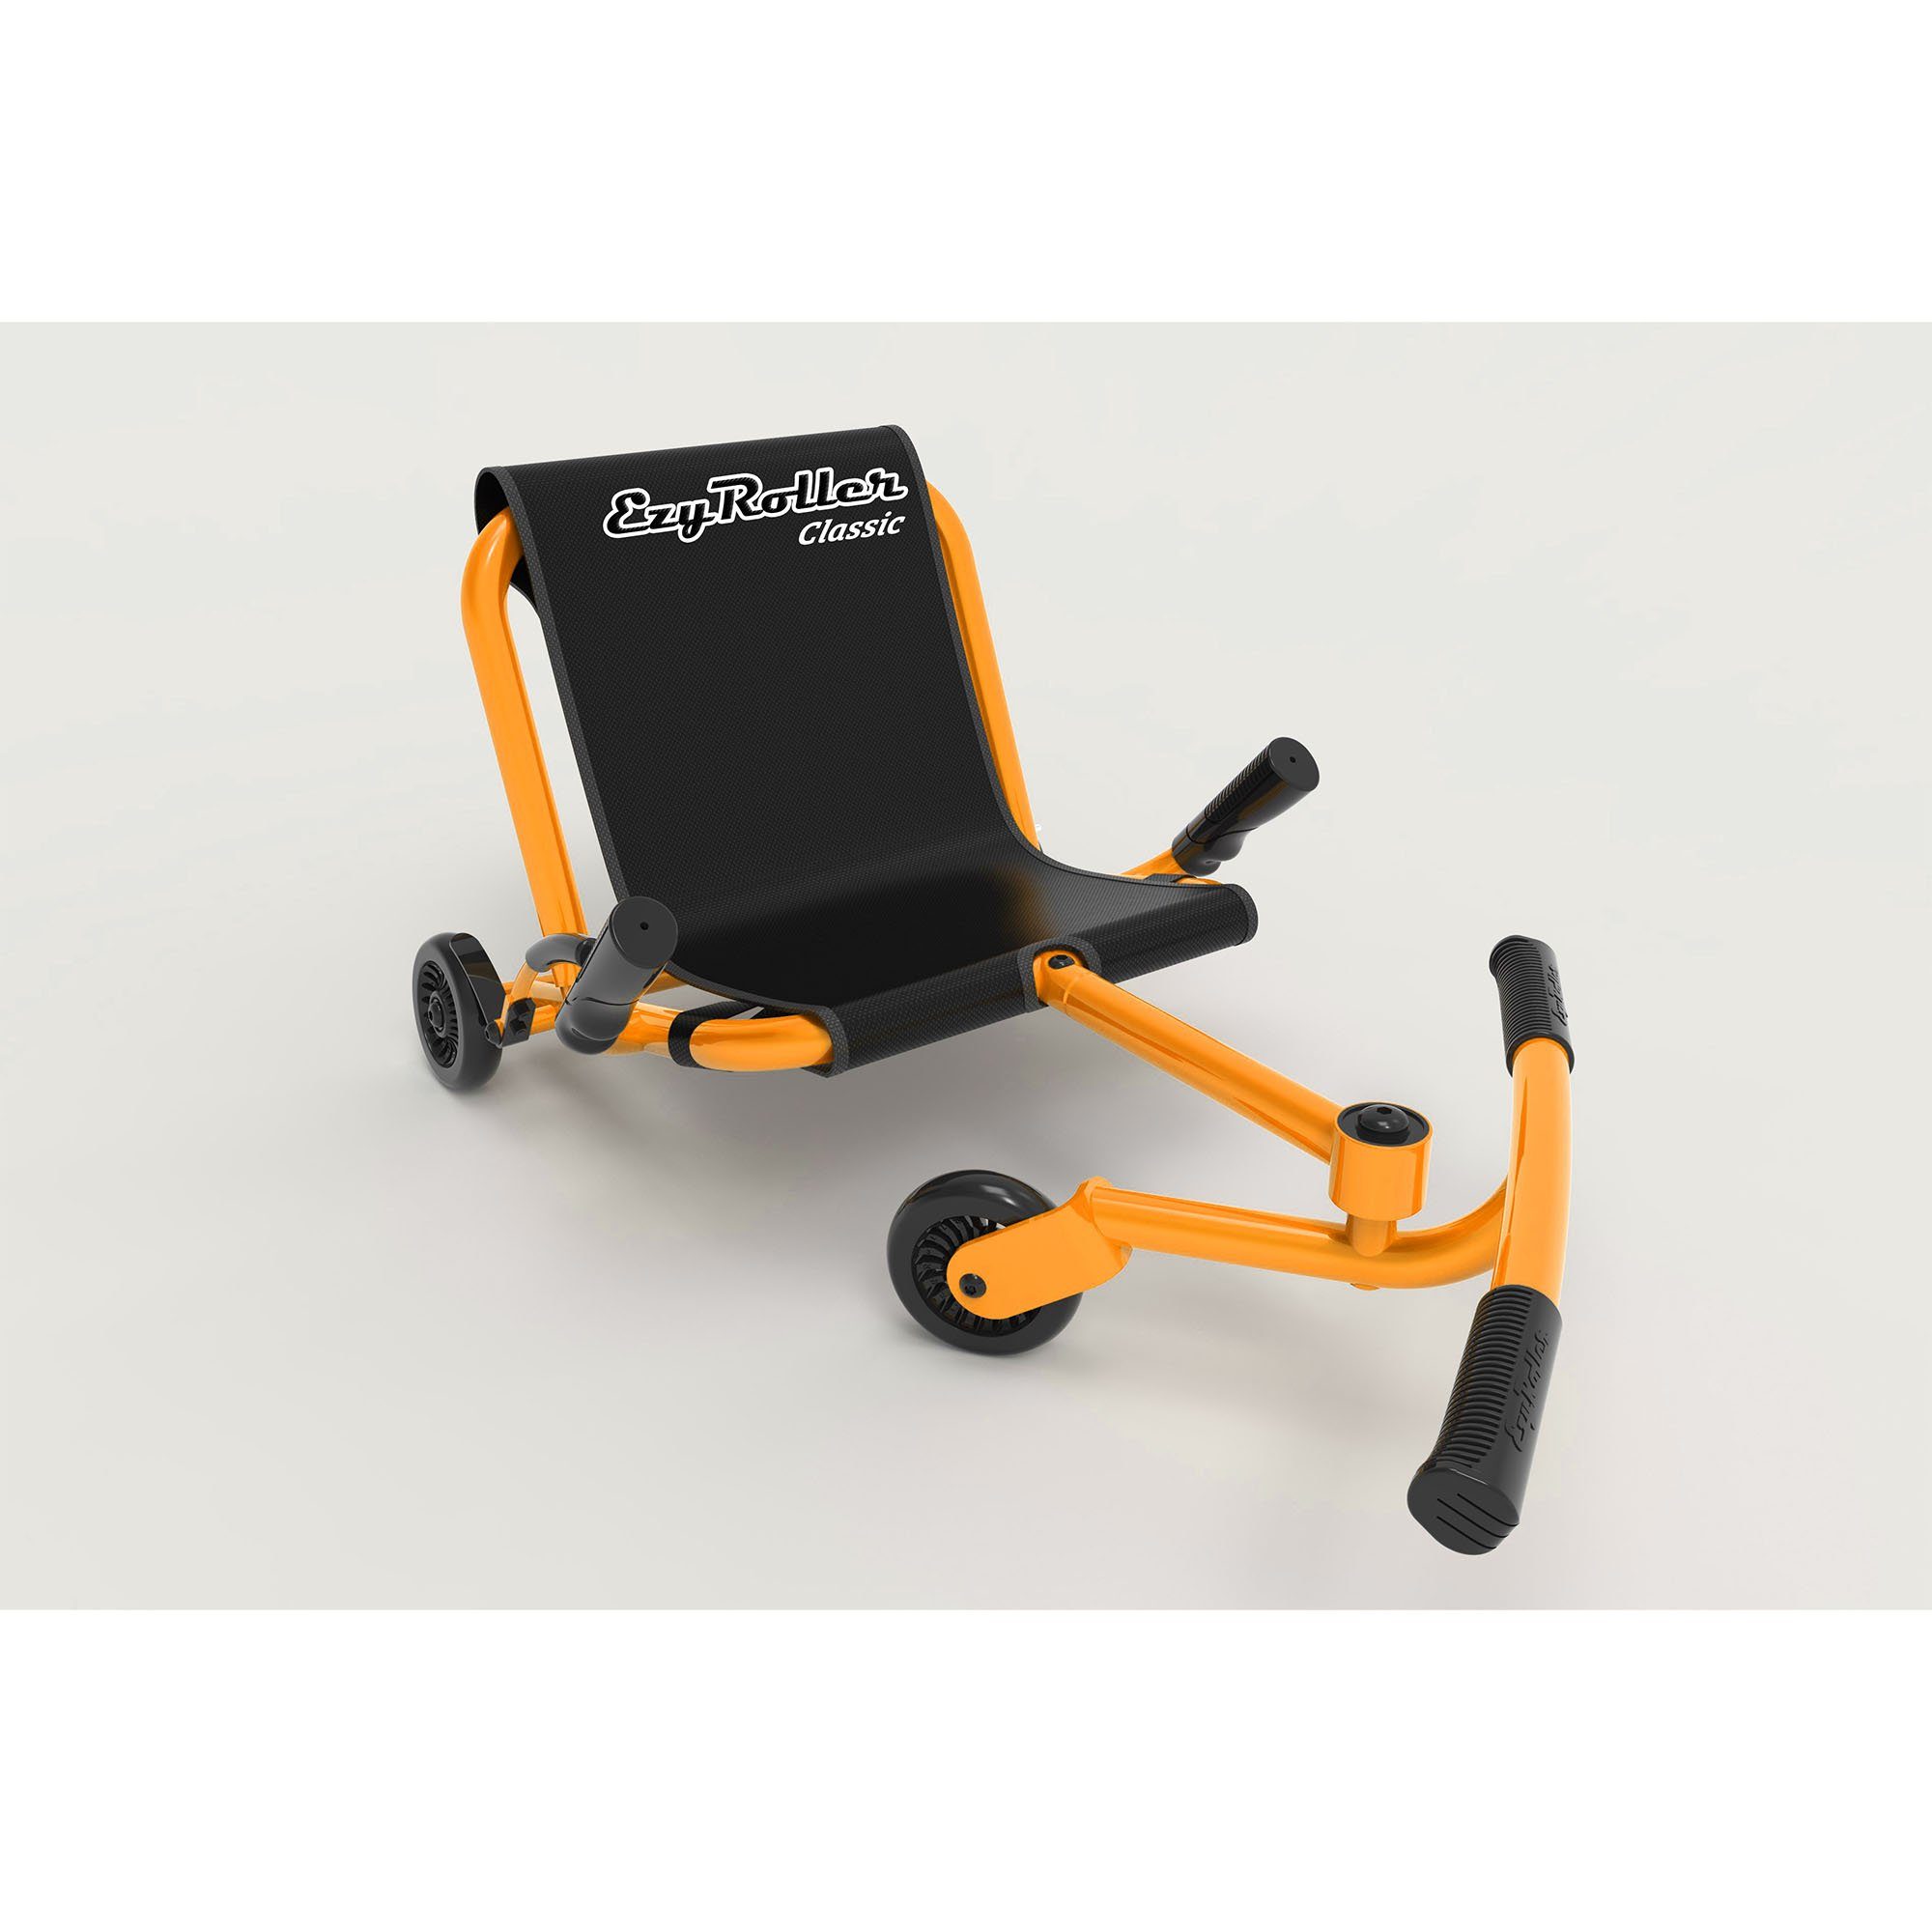 EzyRoller Dreiradscooter Classic, Kinderfahrzeug für Kinder ab 4 bis 14 Jahre Dreirad Trike Funfahrzeug orange